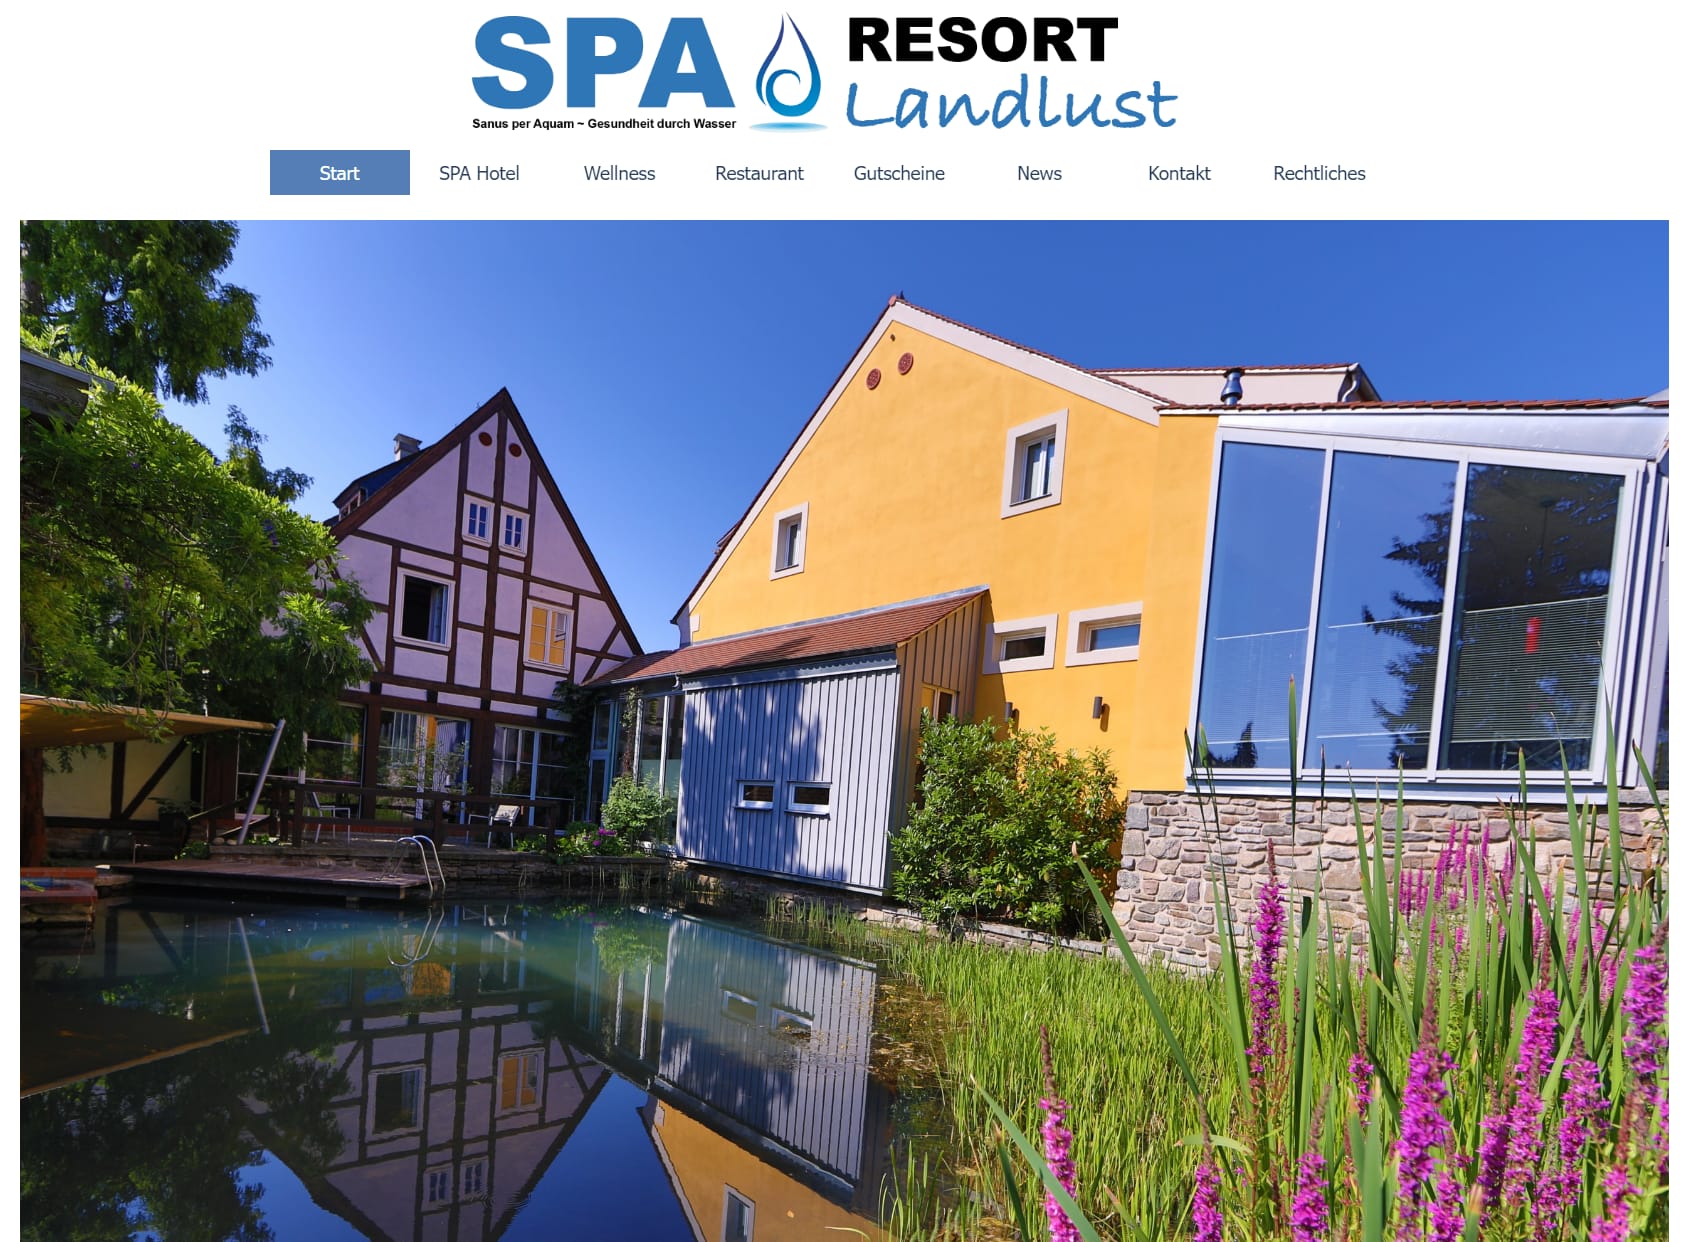 SPA Resort Landlust in Dresden, das Dorfhotel